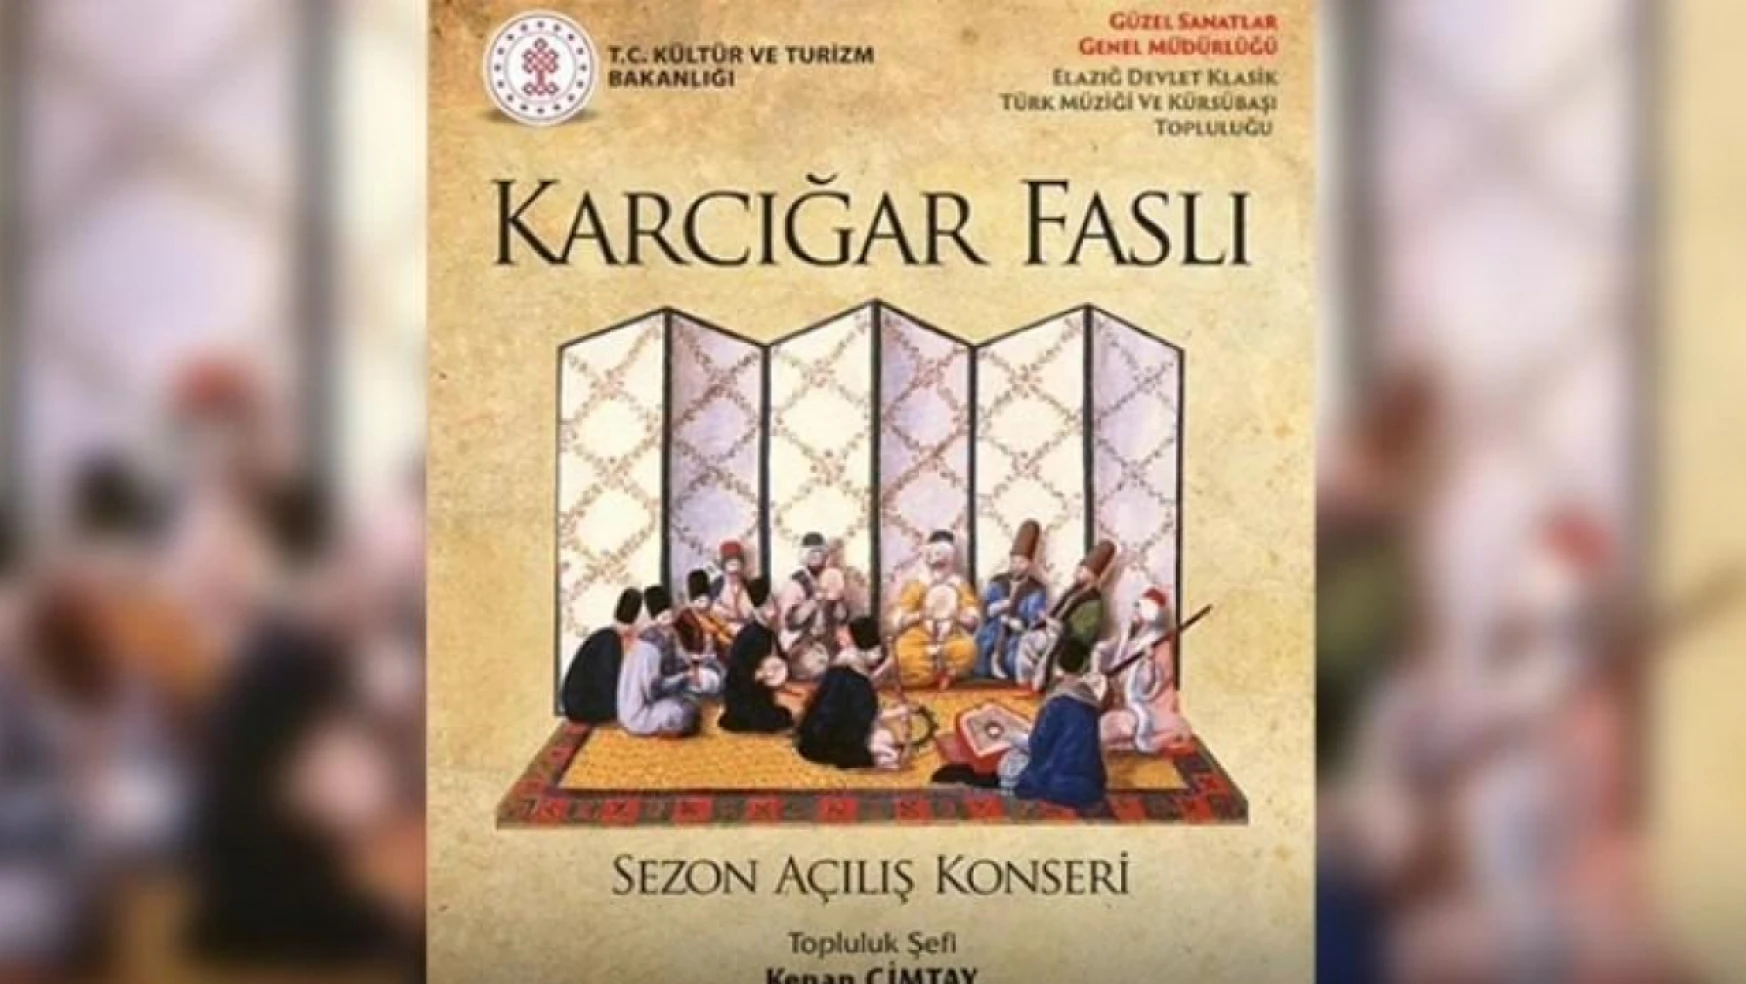 Elazığ'da 'karcığar faslı' konseri düzenlenecek